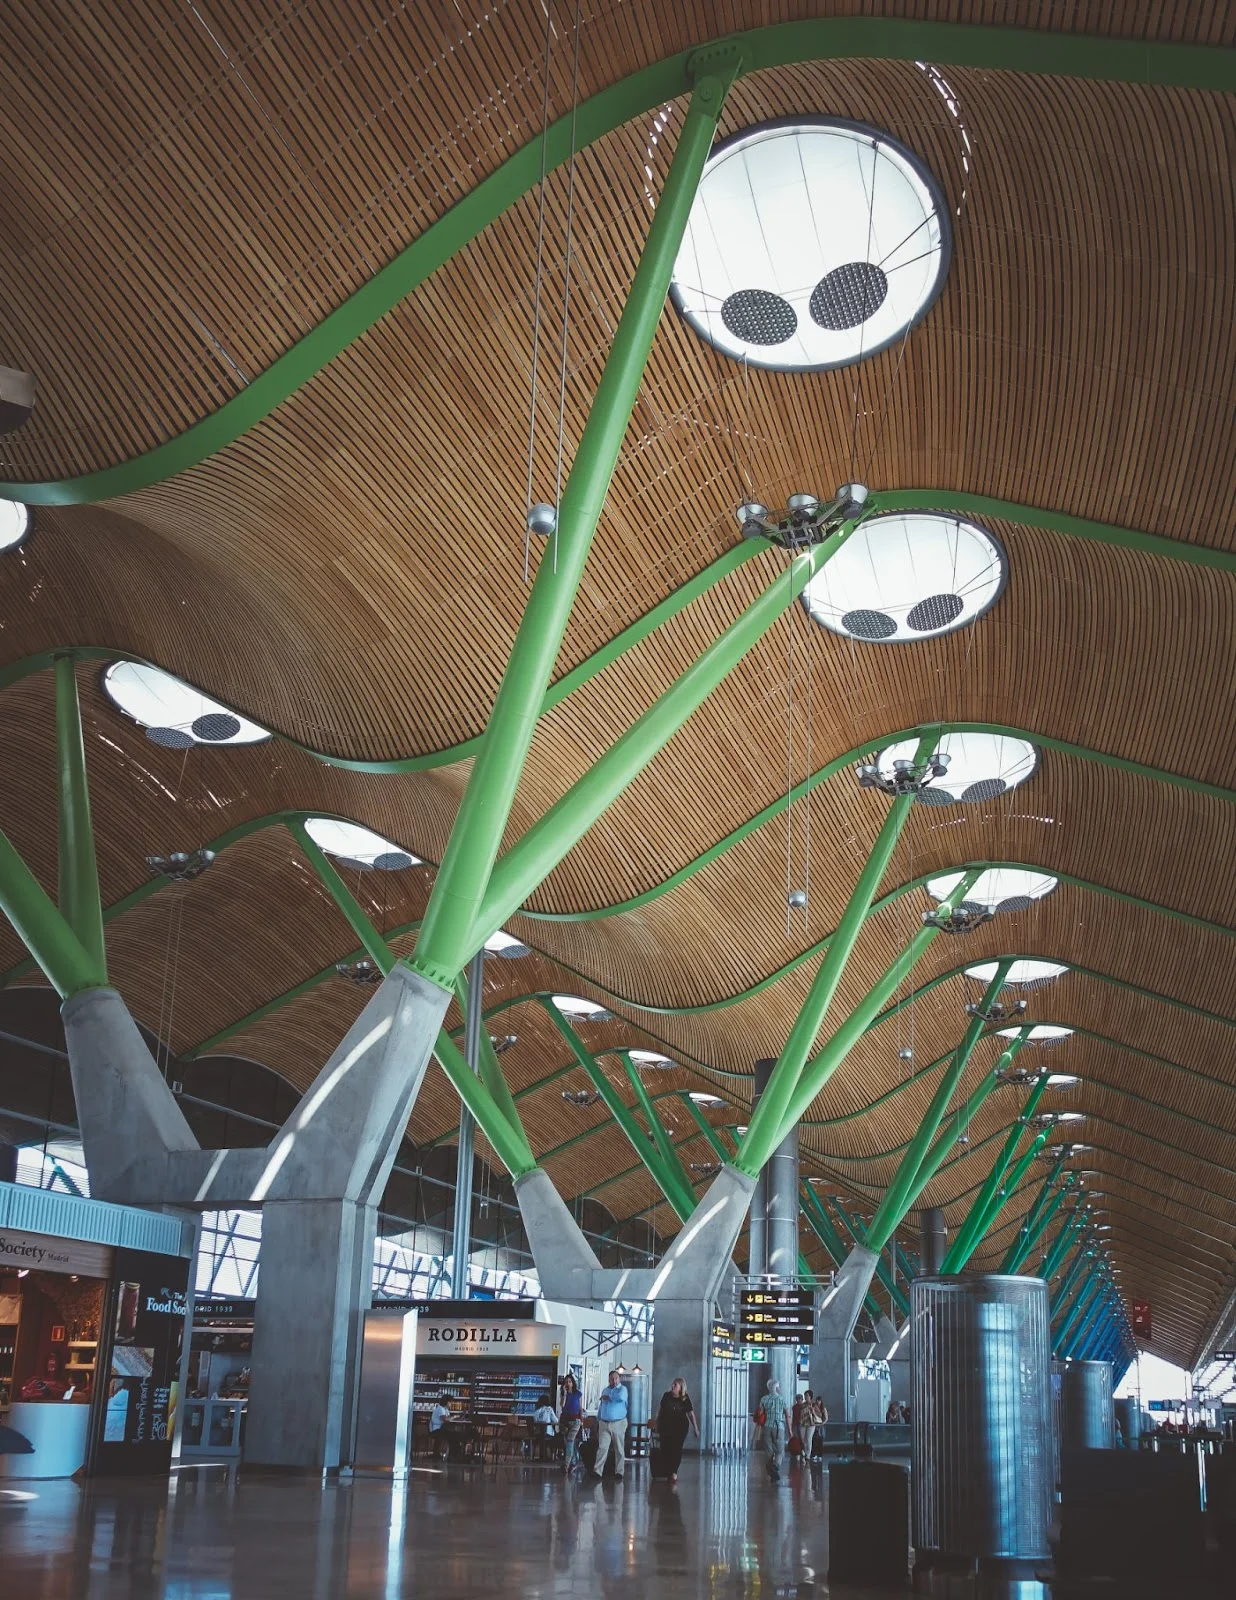 El aeropuerto Adolfo Suárez de Madrid es uno de los mejores hubs internacionales de Europa. La terminal 4 es la más moderna y fácil de transitar.